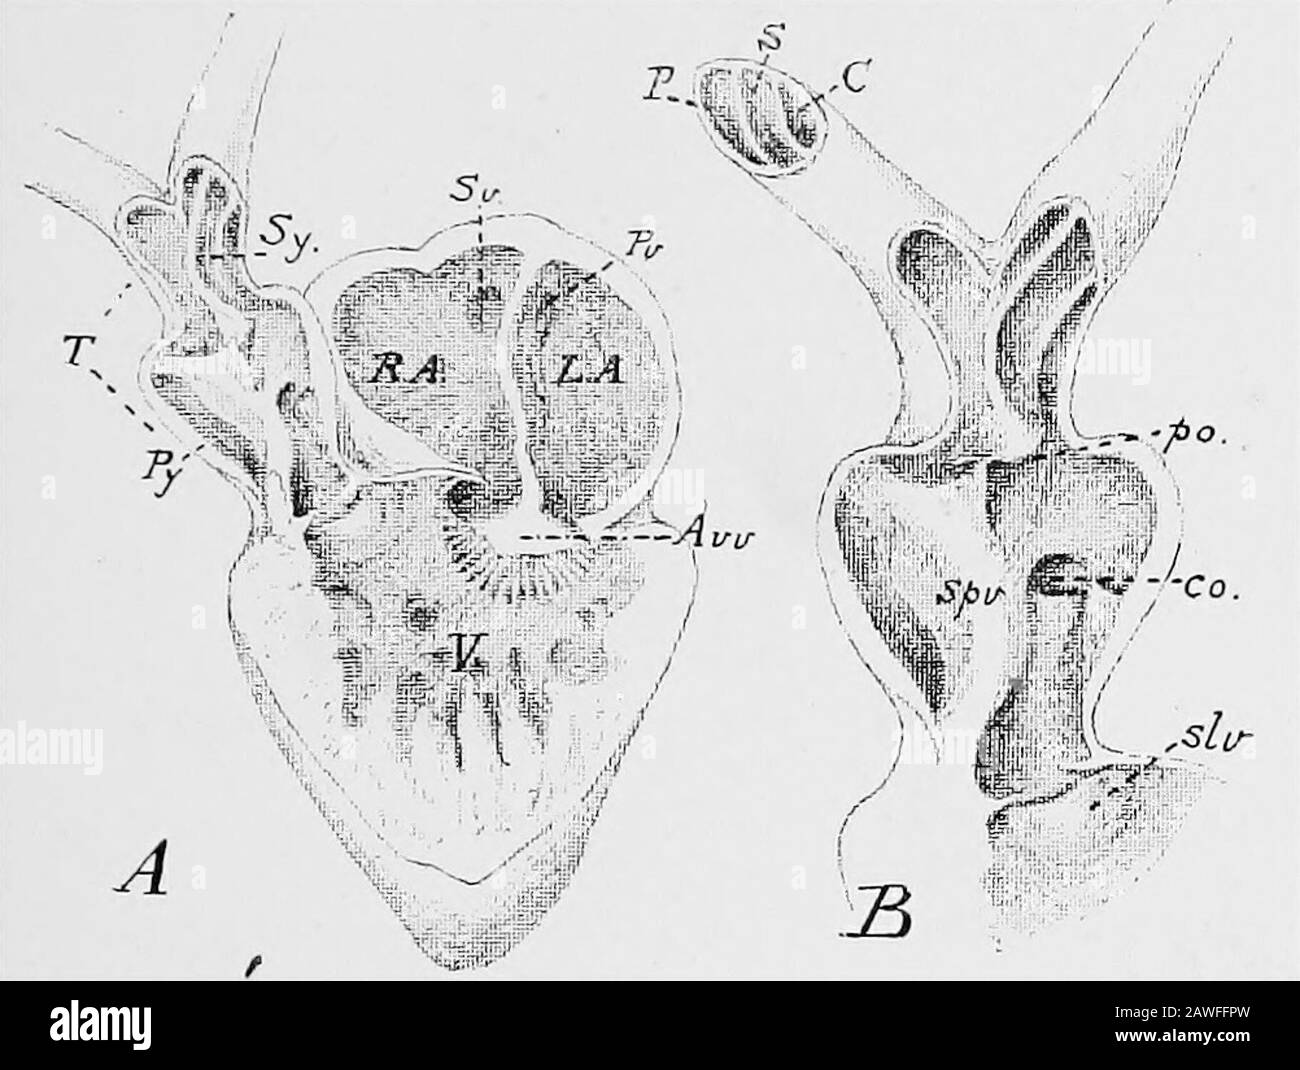 Eine Einführung in die Untersuchung der vergleichenden Anatomie von Tieren . dicker als die Aurikel, durch das Vorhandensein von reichlich Muskelgewebe in seinen Wänden. Seine Kavityist nicht glatt, sondern schwammig im Aussehen, durch das Vorhandensein zahlreicher muskulärer Grate, die in sie projizieren.Die Höhle reicht nicht weit in den Scheitel des Ventrikels hinein, ist ziemlich schmal dorso-ventral^ aber von rechts nach Toleft verlängert. Die auriculo-ventrikuläre Apertur, durch die die Ventrikleciples mit den Aurikeln kommunizieren, ist eher eine breite Öffnung, die durch den freien Rand des aurikulären Septums, Anii Digitiz, zweigeteilt wird Stockfoto